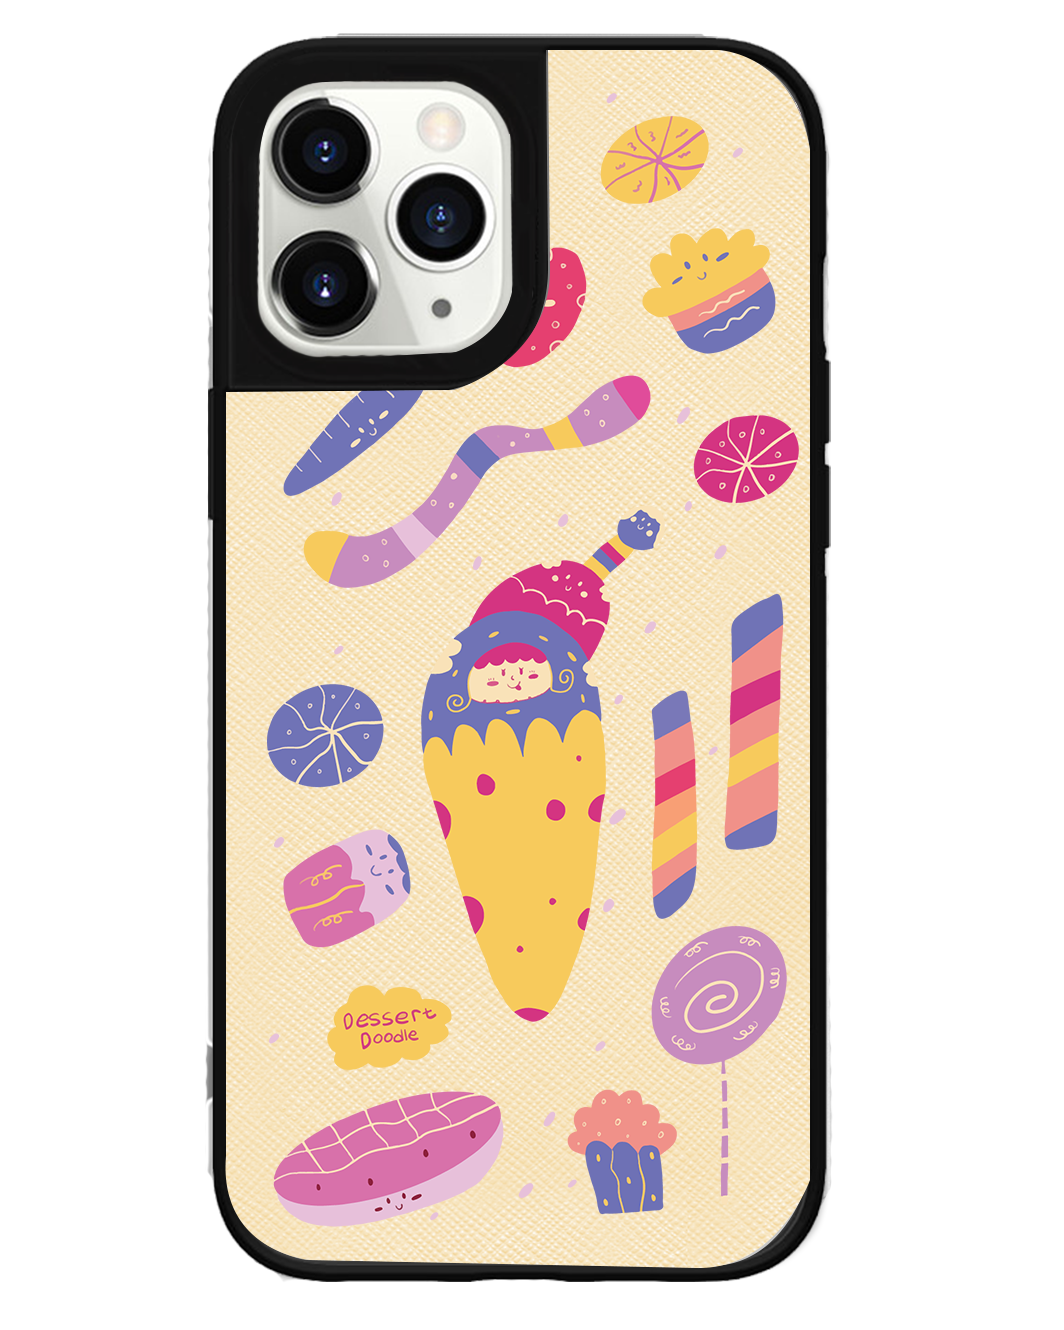 iPhone Leather Grip Case - Dessert Doodle